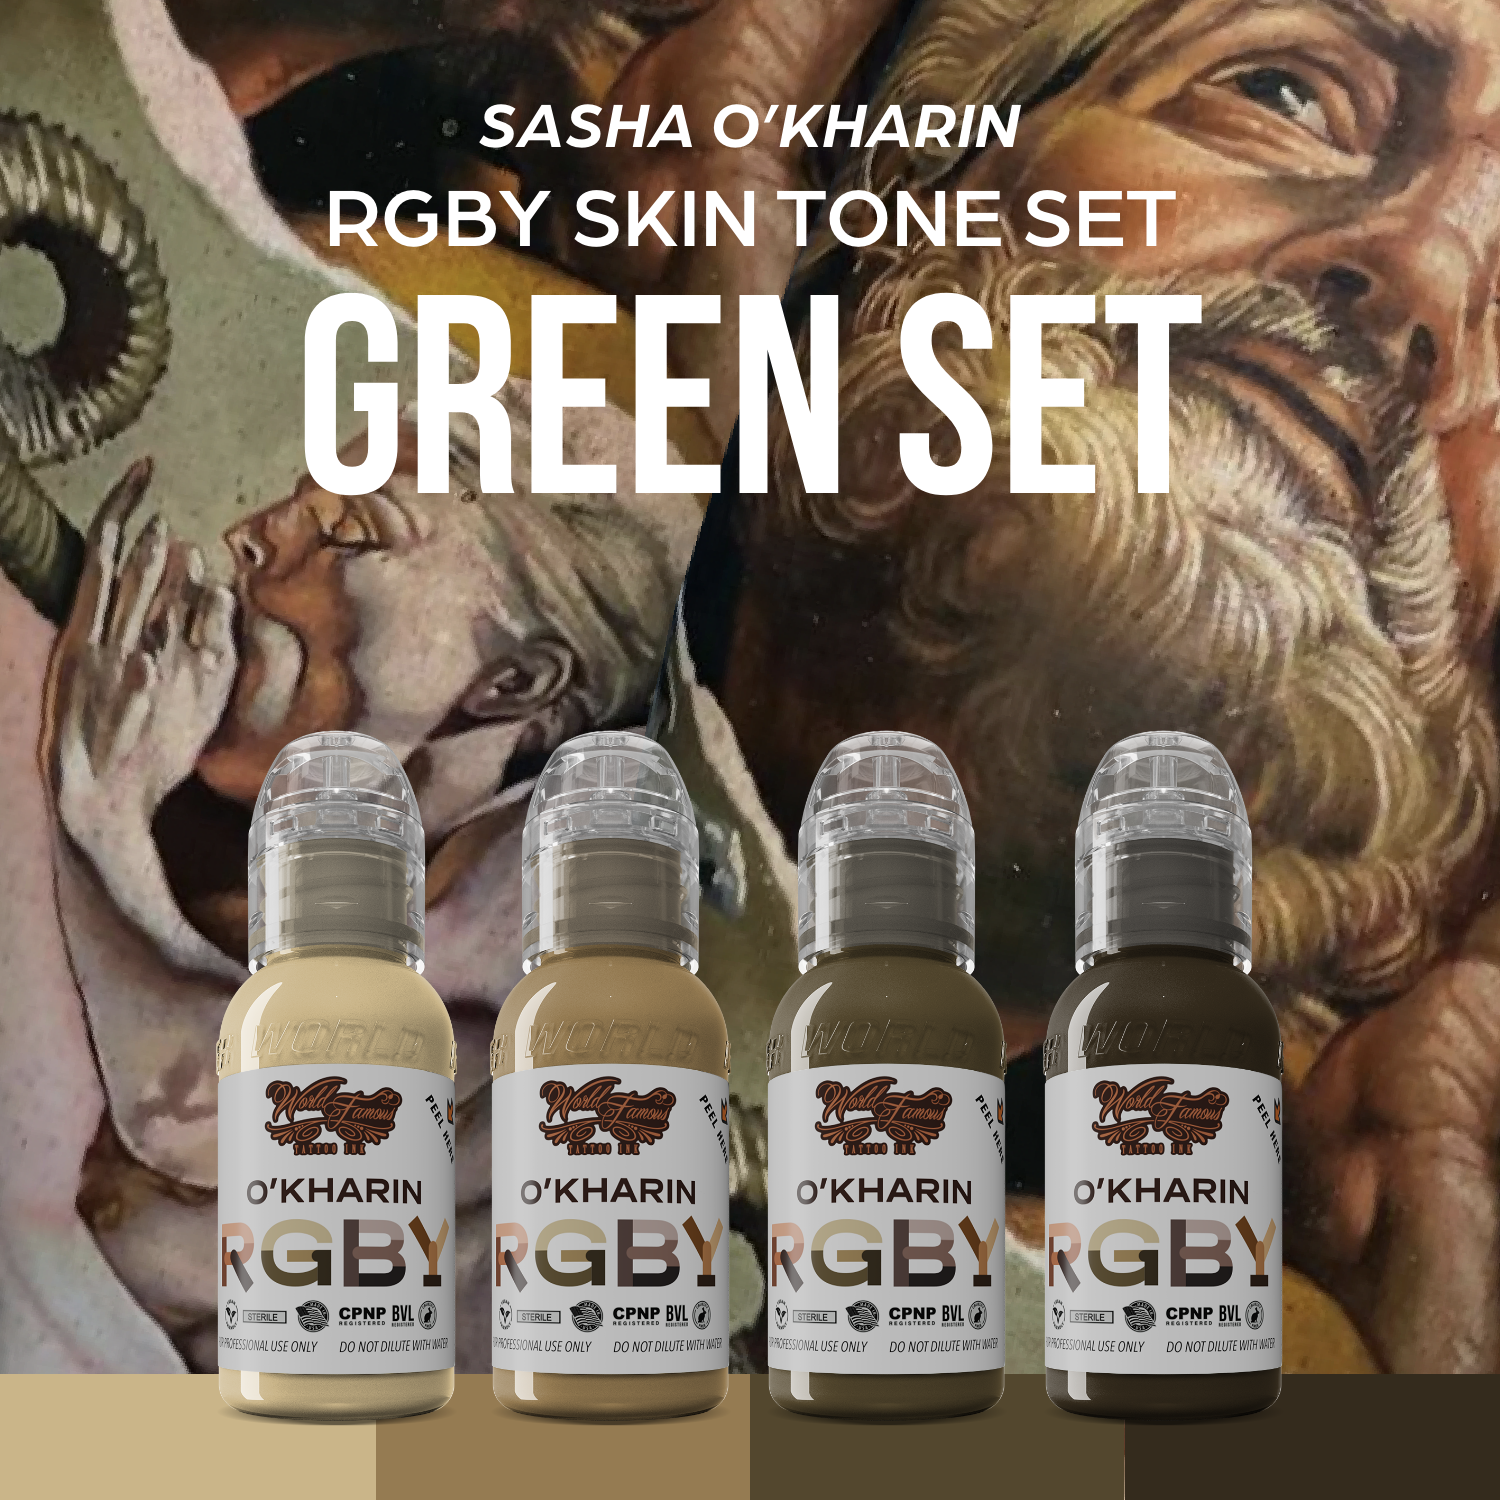 Sasha O'Kharin RGBY Green Set